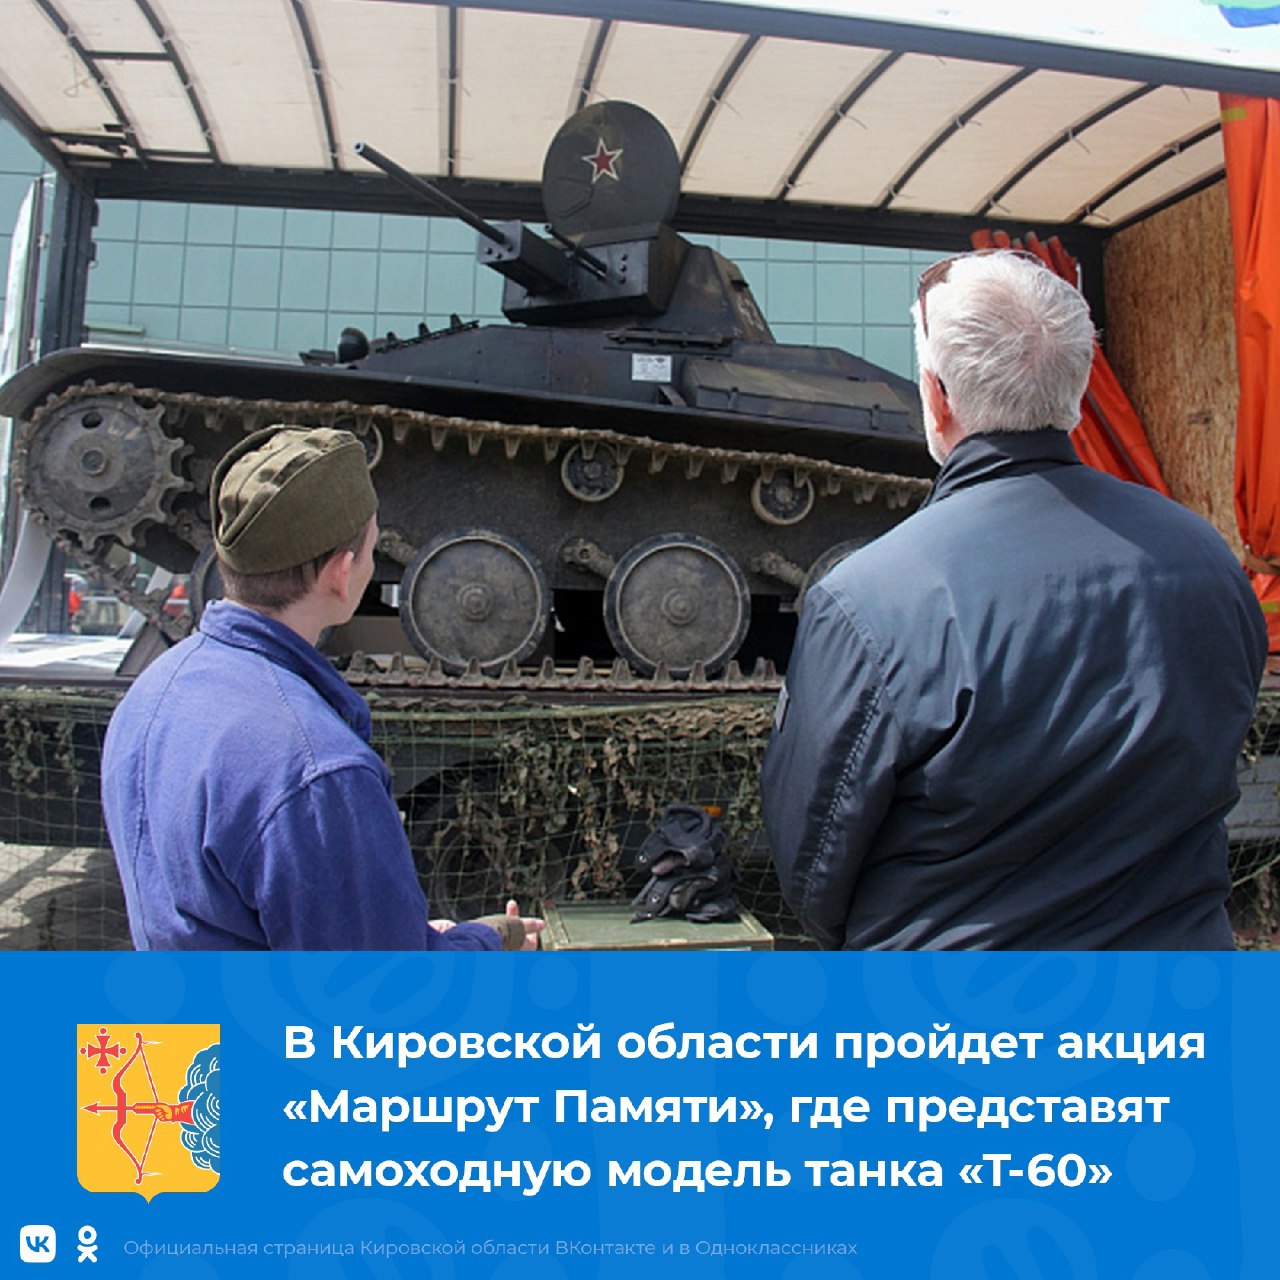 В Кировской области пройдет акция «Маршрут Памяти», где представят самоходную модель танка «Т-60».